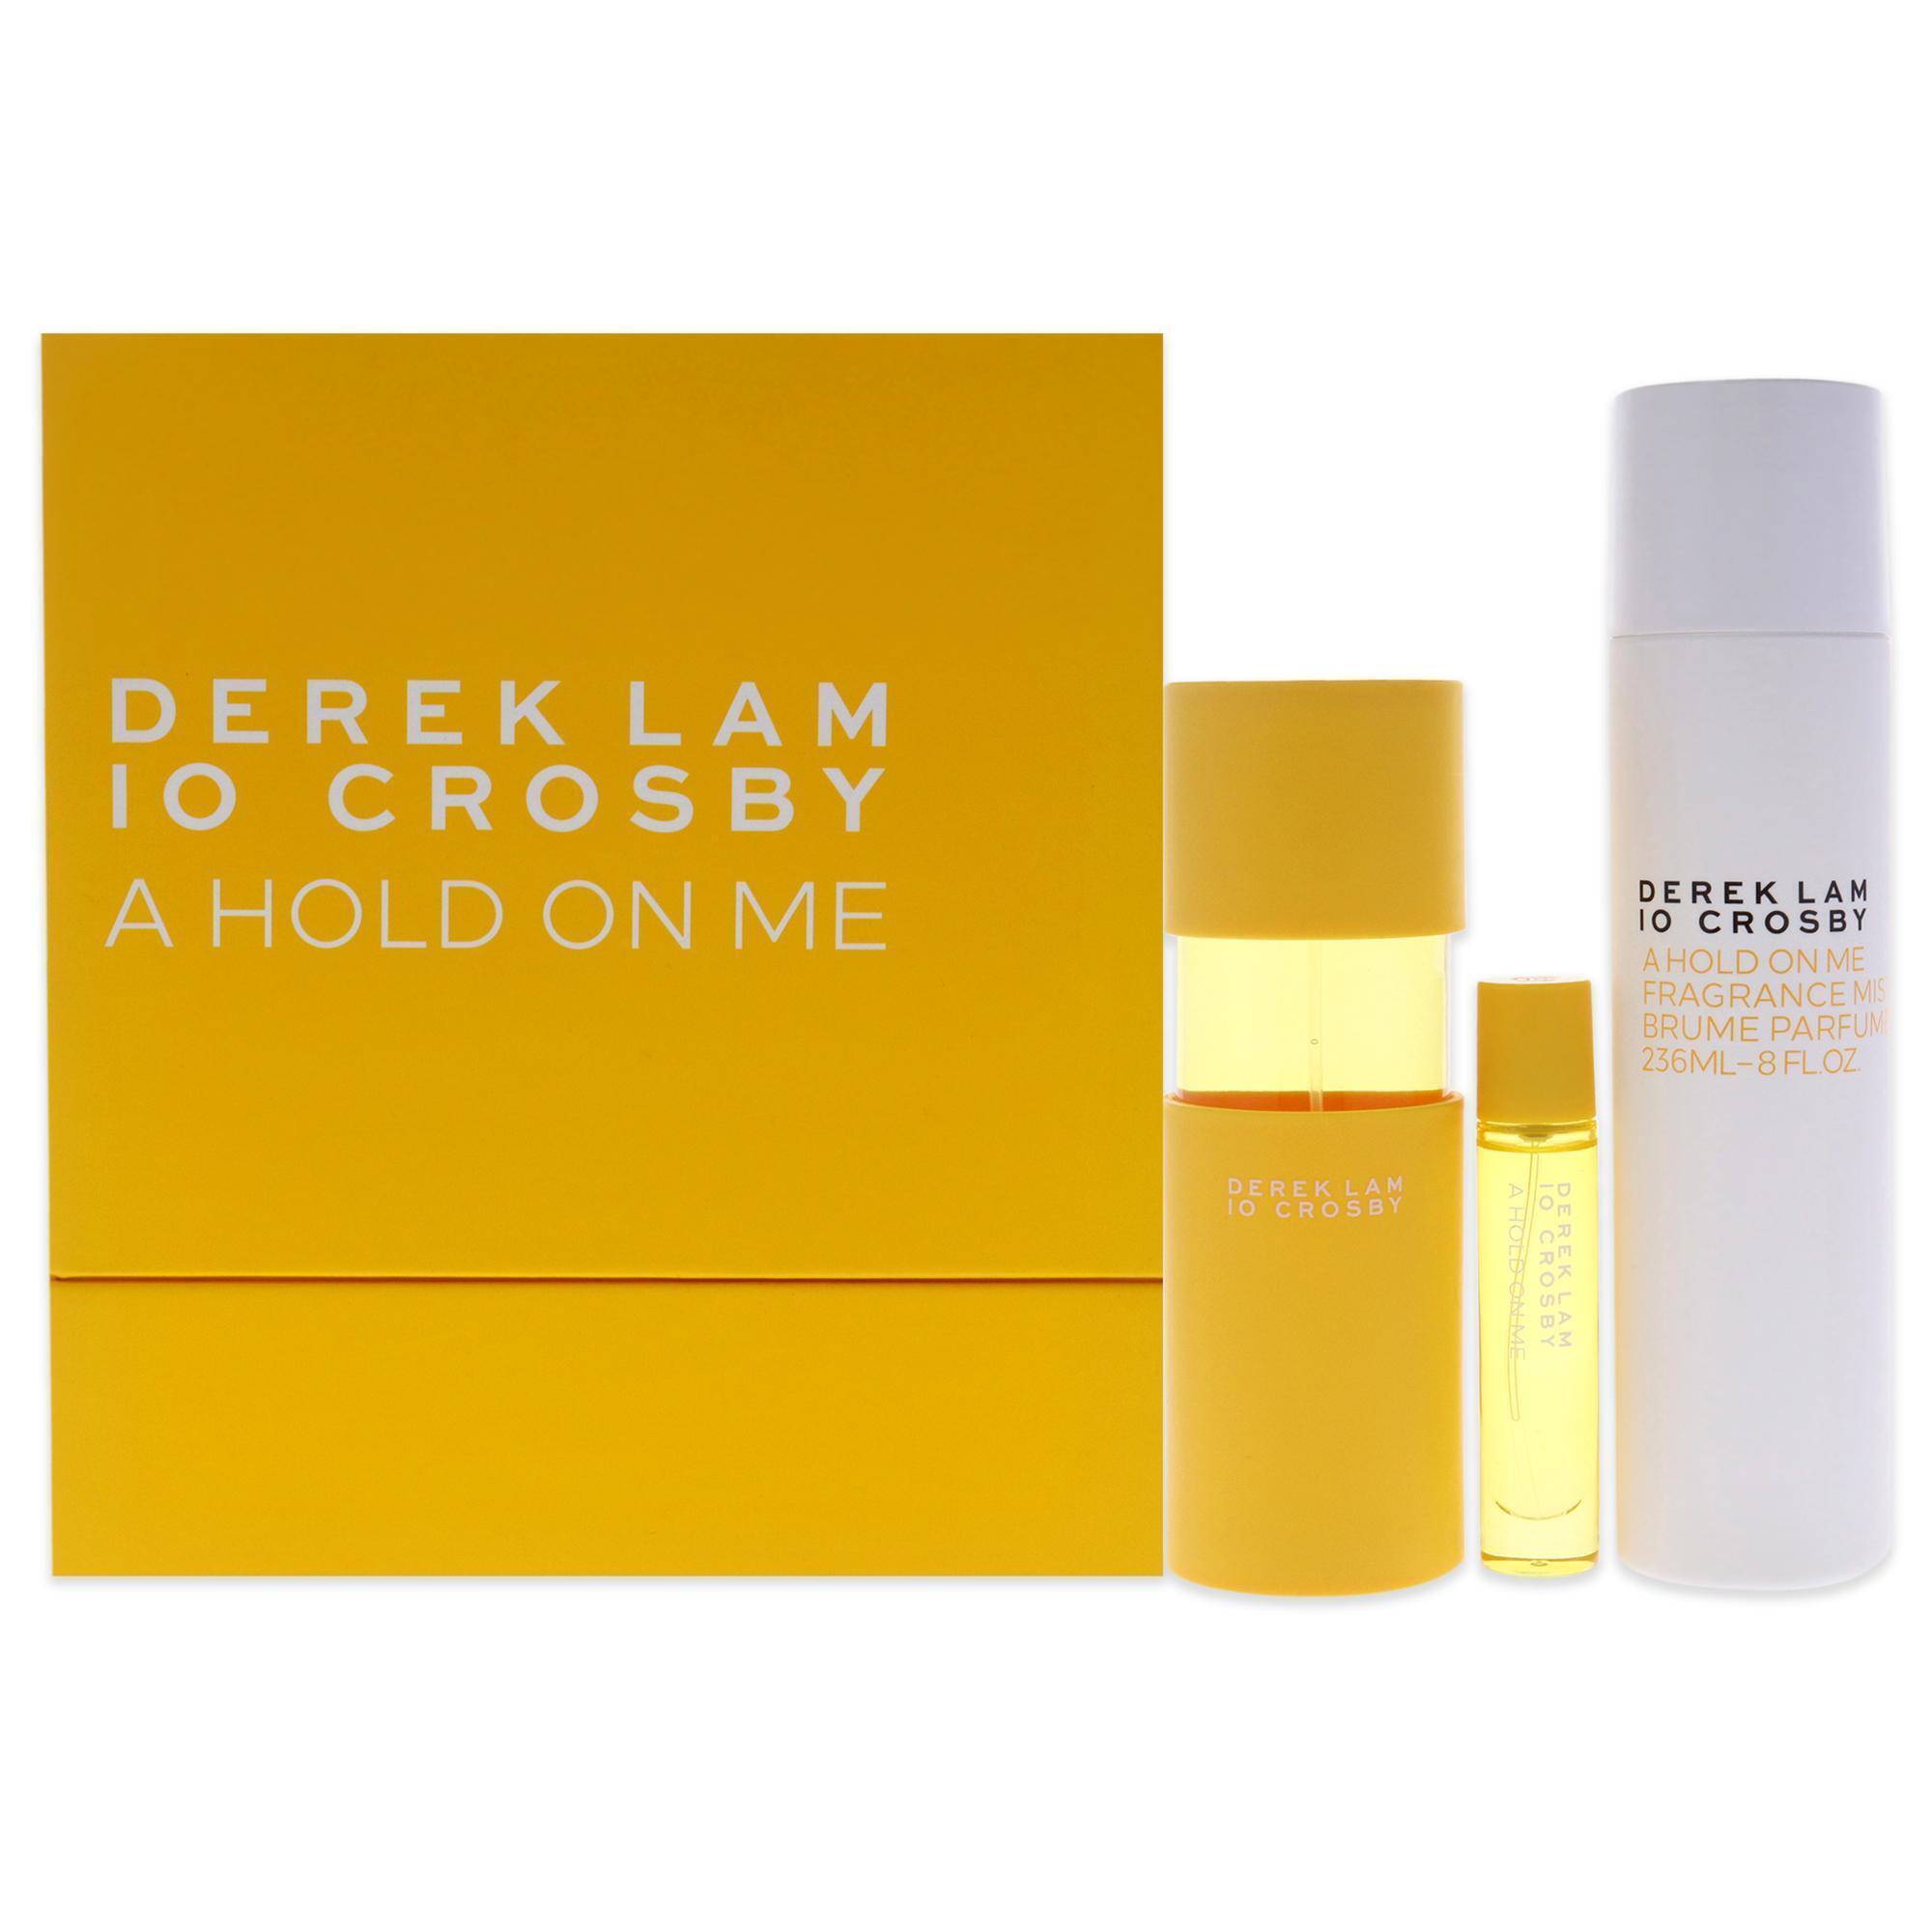 A Hold On Me Spring 20 by Derek Lam for Women - 3 Pc Gift Set 3.4oz EDP Spray, 10ml EDP Spray, 8oz Fragrance Mist